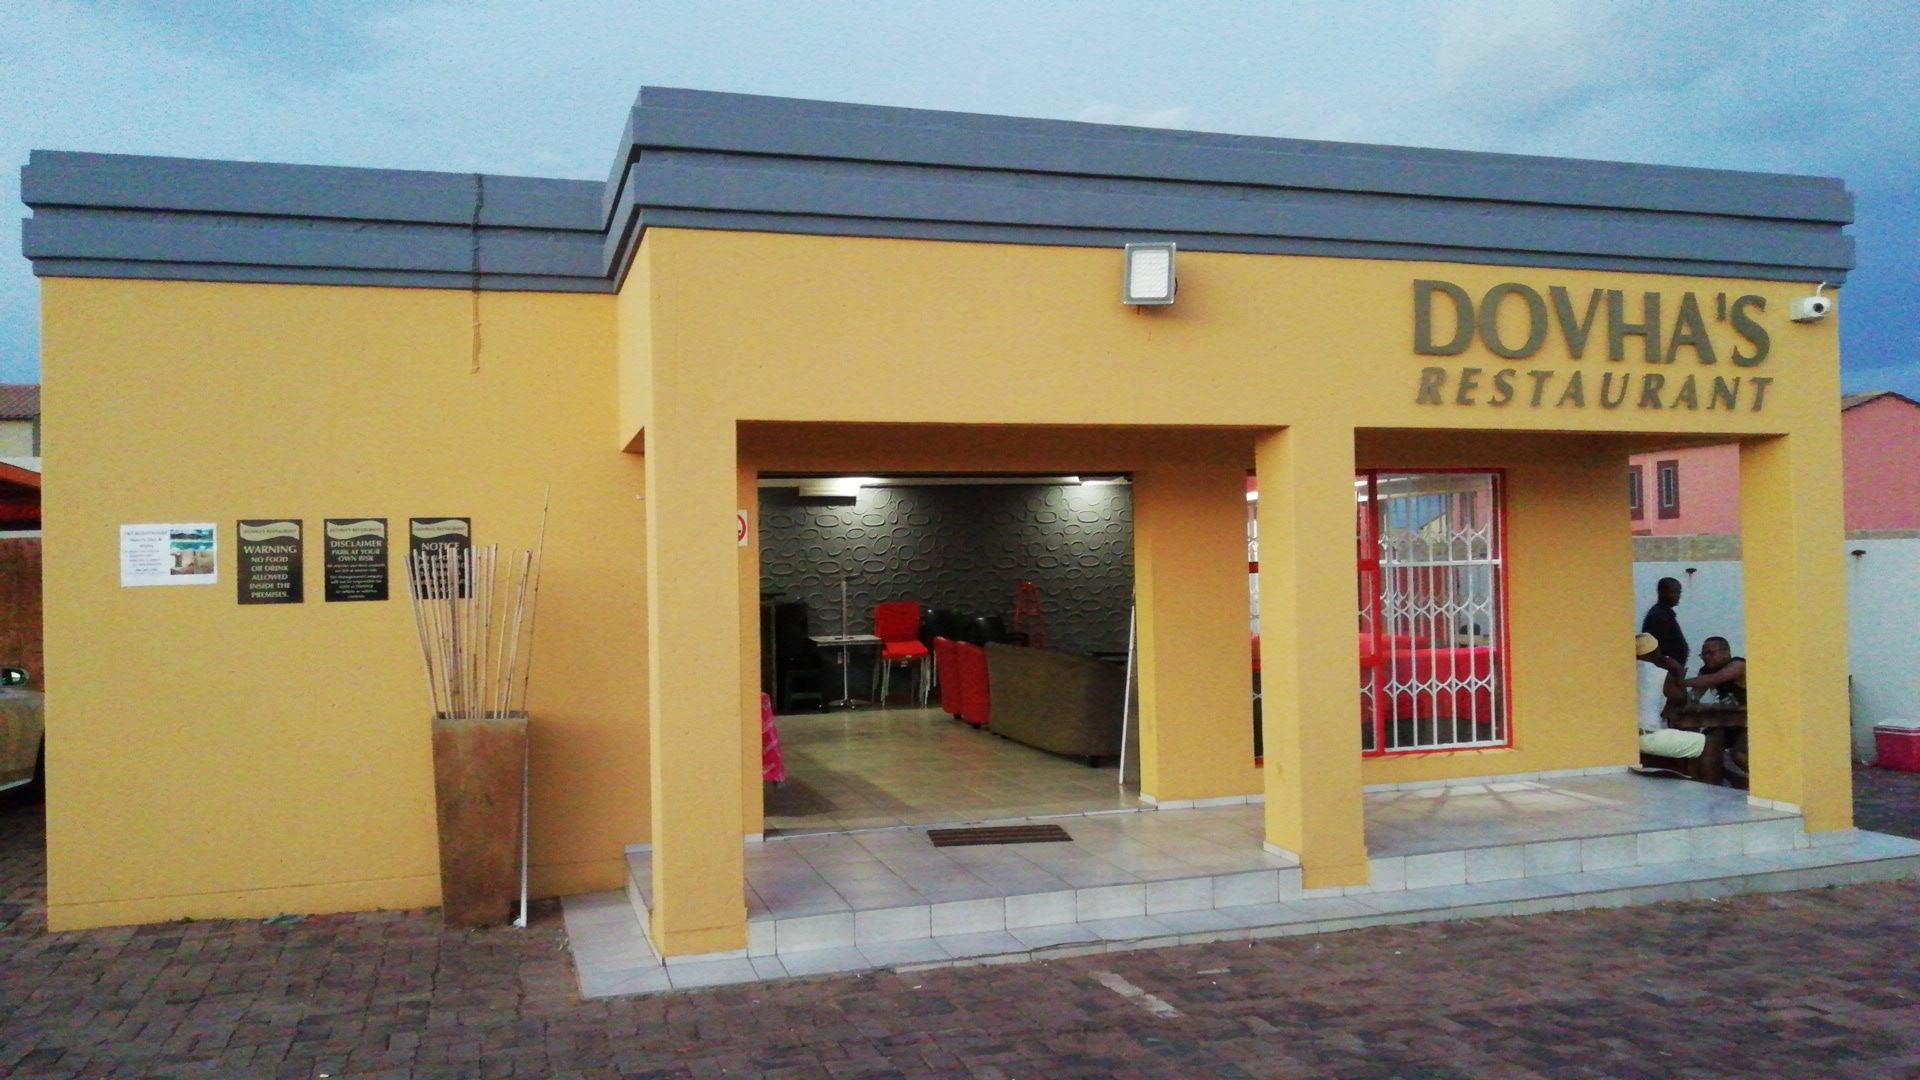 Dovha’s Restaurant